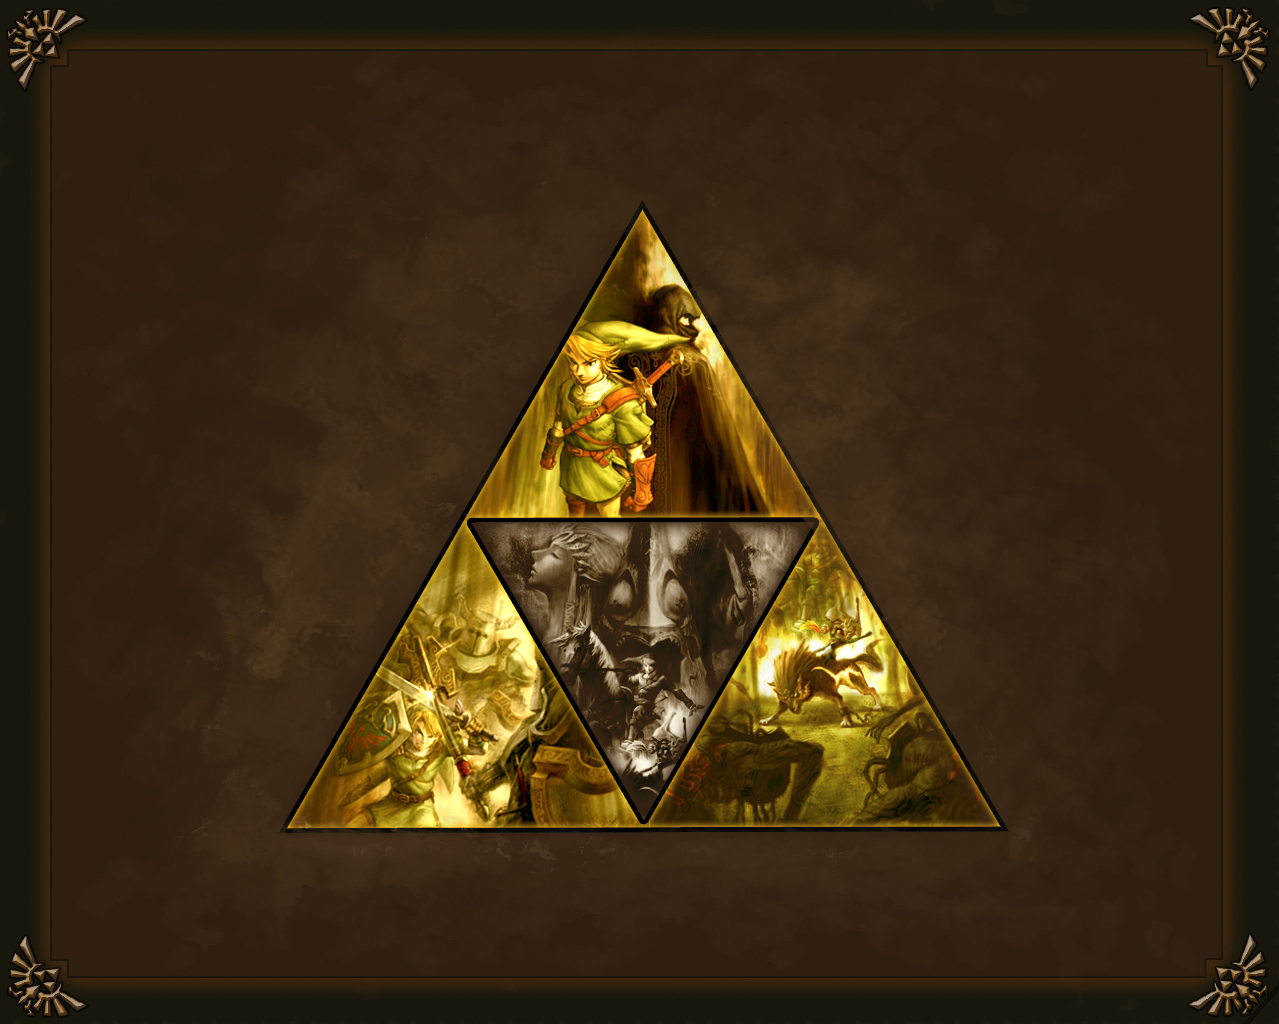 ゼルダの伝説トワイライトプリンセス壁紙,ピラミッド,三角形,記念碑